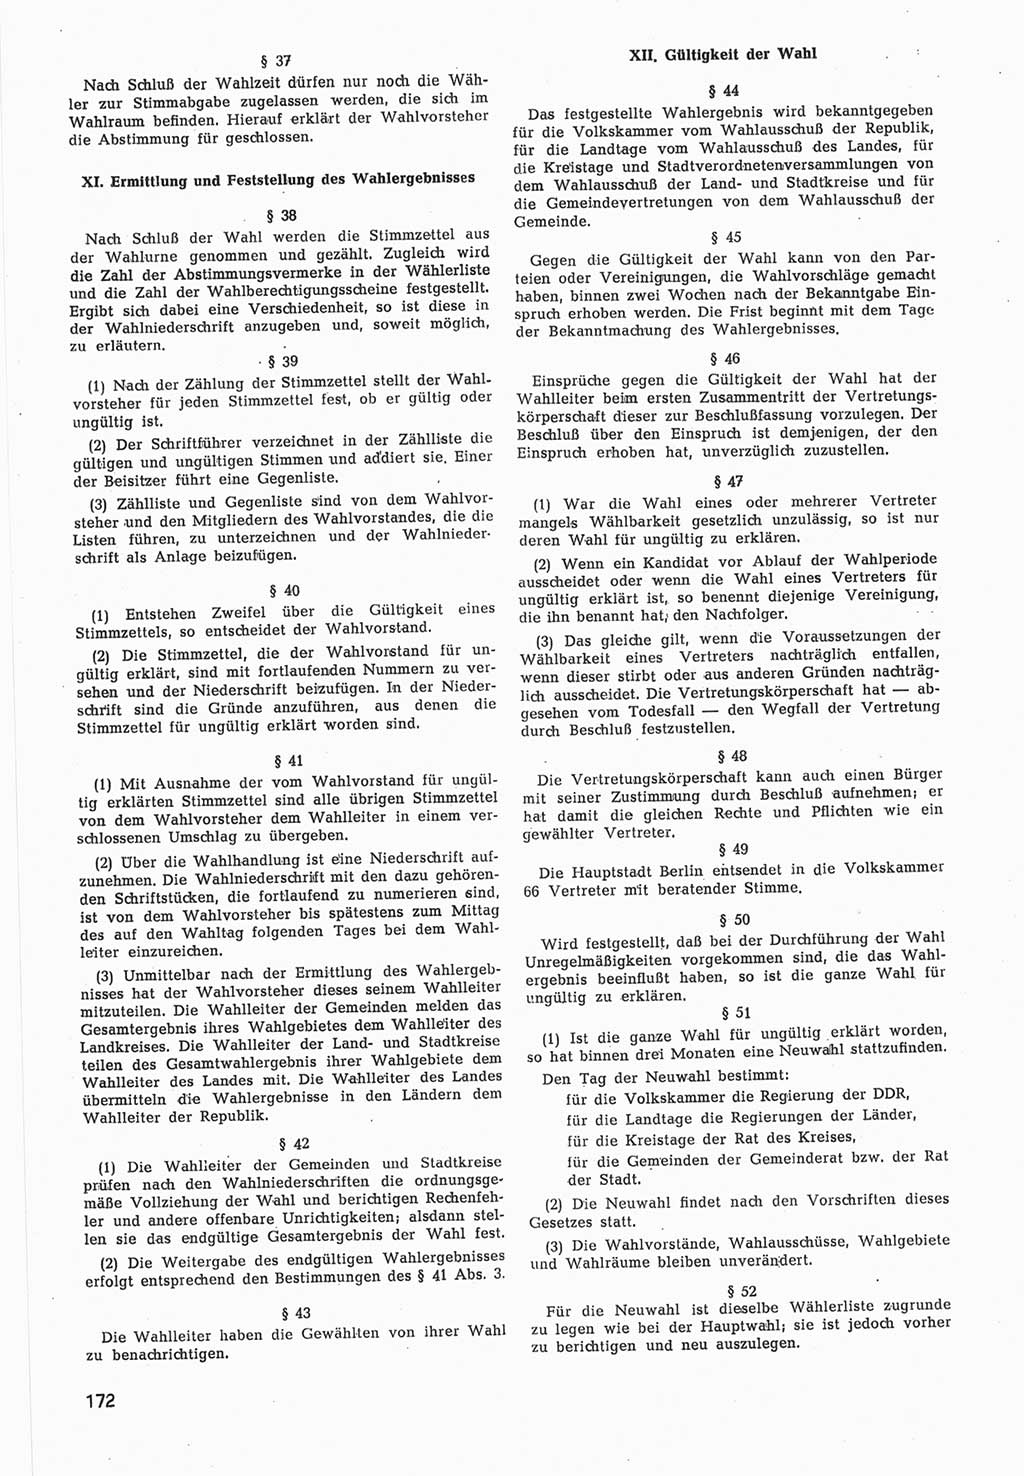 Provisorische Volkskammer (VK) der Deutschen Demokratischen Republik (DDR) 1949-1950, Dokument 774 (Prov. VK DDR 1949-1950, Dok. 774)